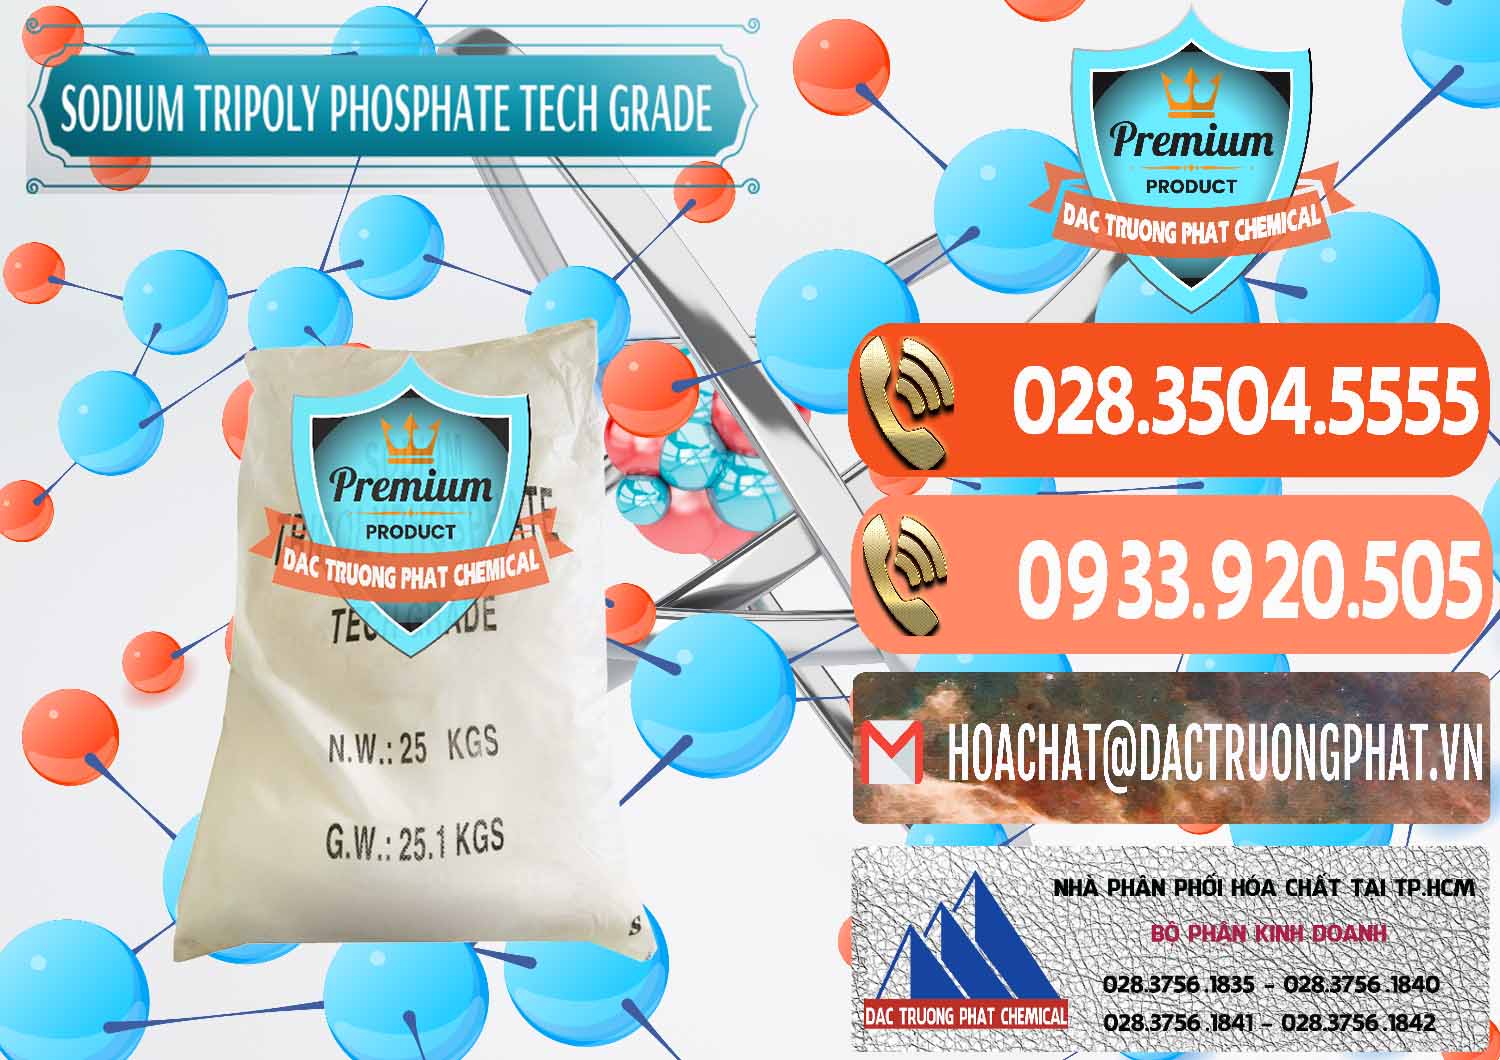 Nơi chuyên bán _ cung ứng Sodium Tripoly Phosphate - STPP Tech Grade Trung Quốc China - 0453 - Công ty nhập khẩu và cung cấp hóa chất tại TP.HCM - hoachatmientay.com